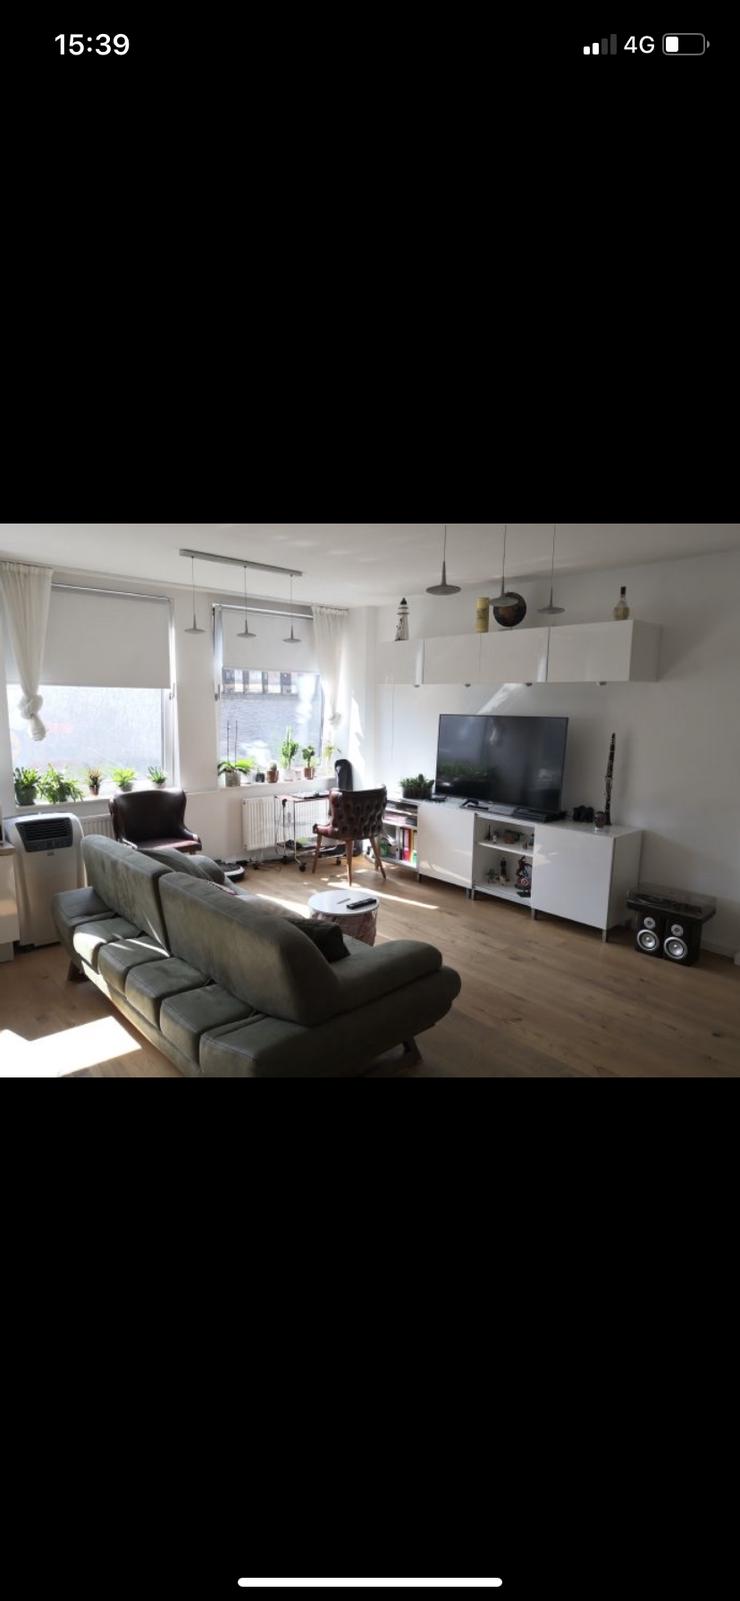 Bild 8: 2 Zimmer Wohnung in Stuttgart Mitte